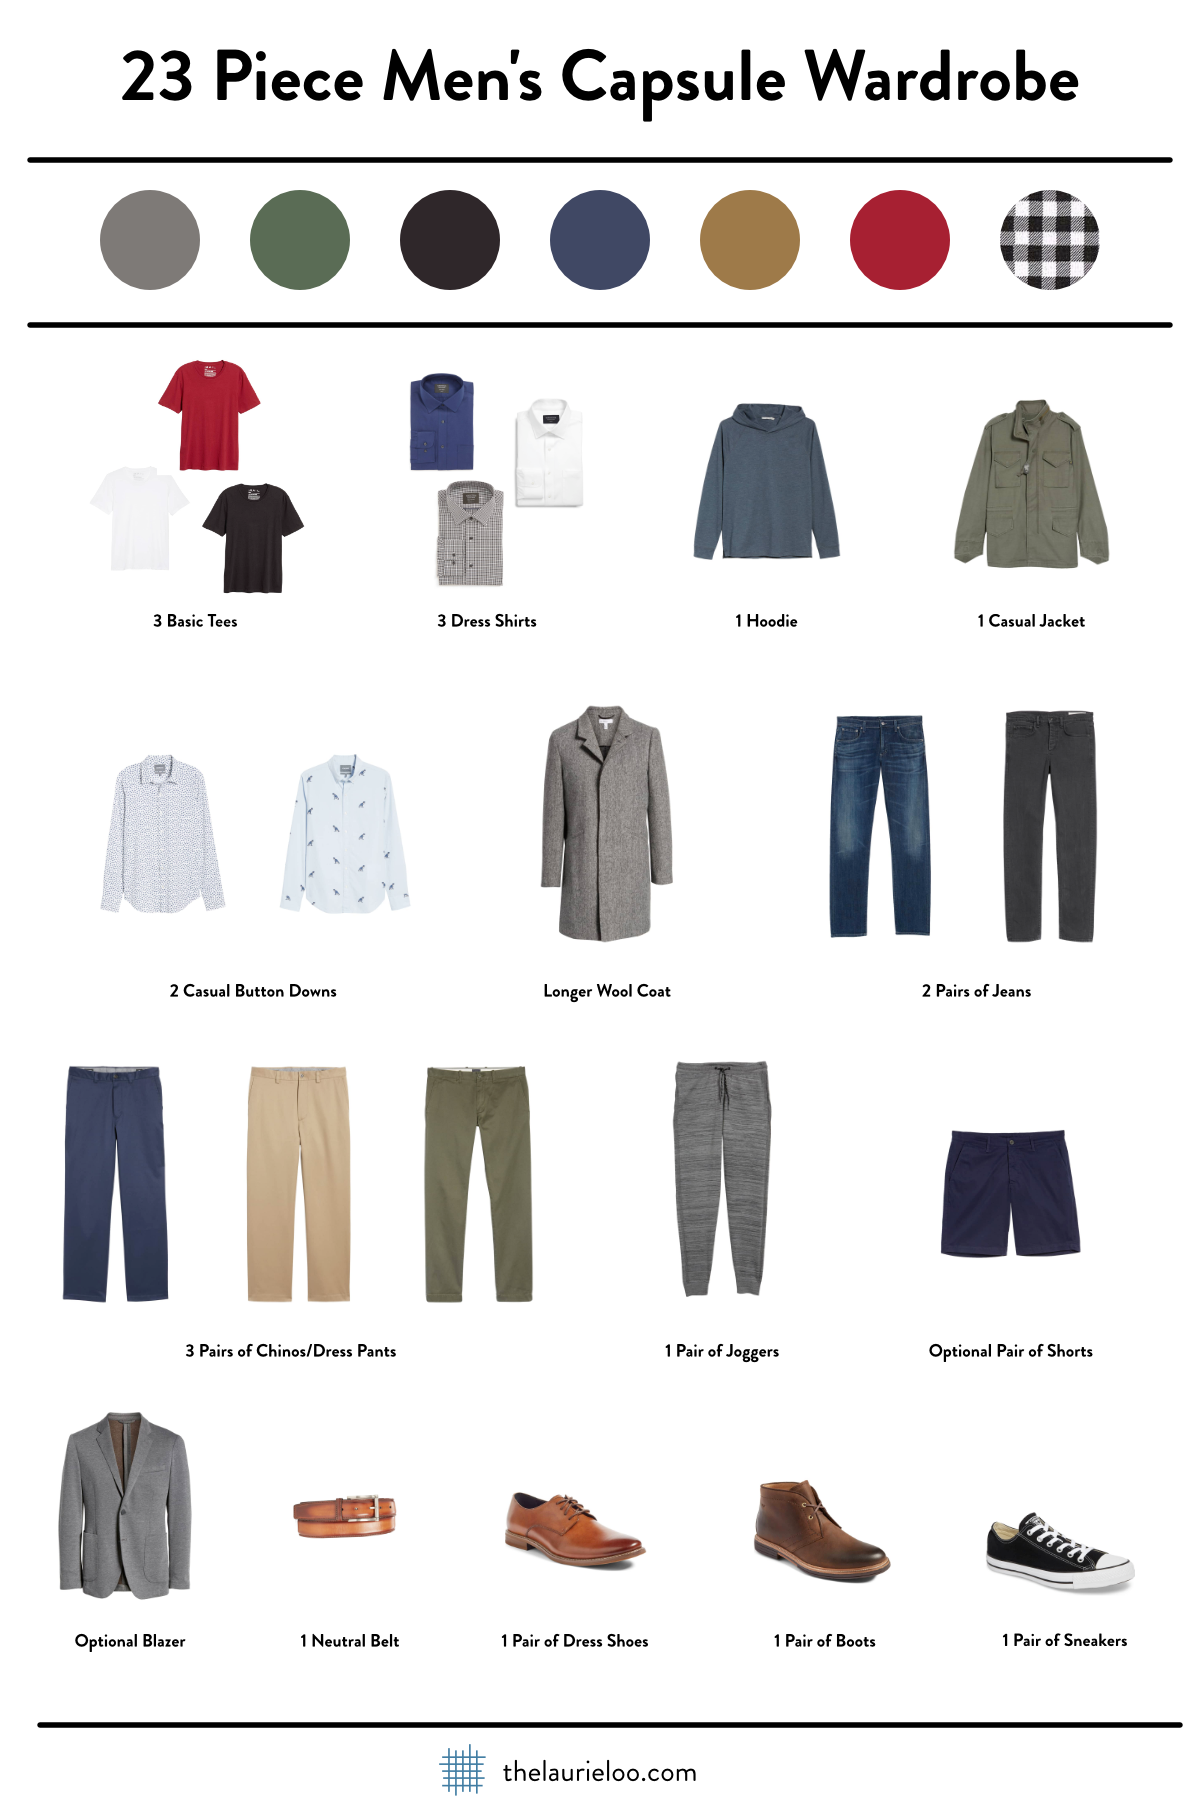 Men's Clothing Essentials Your Closet Should Have – Social Garb